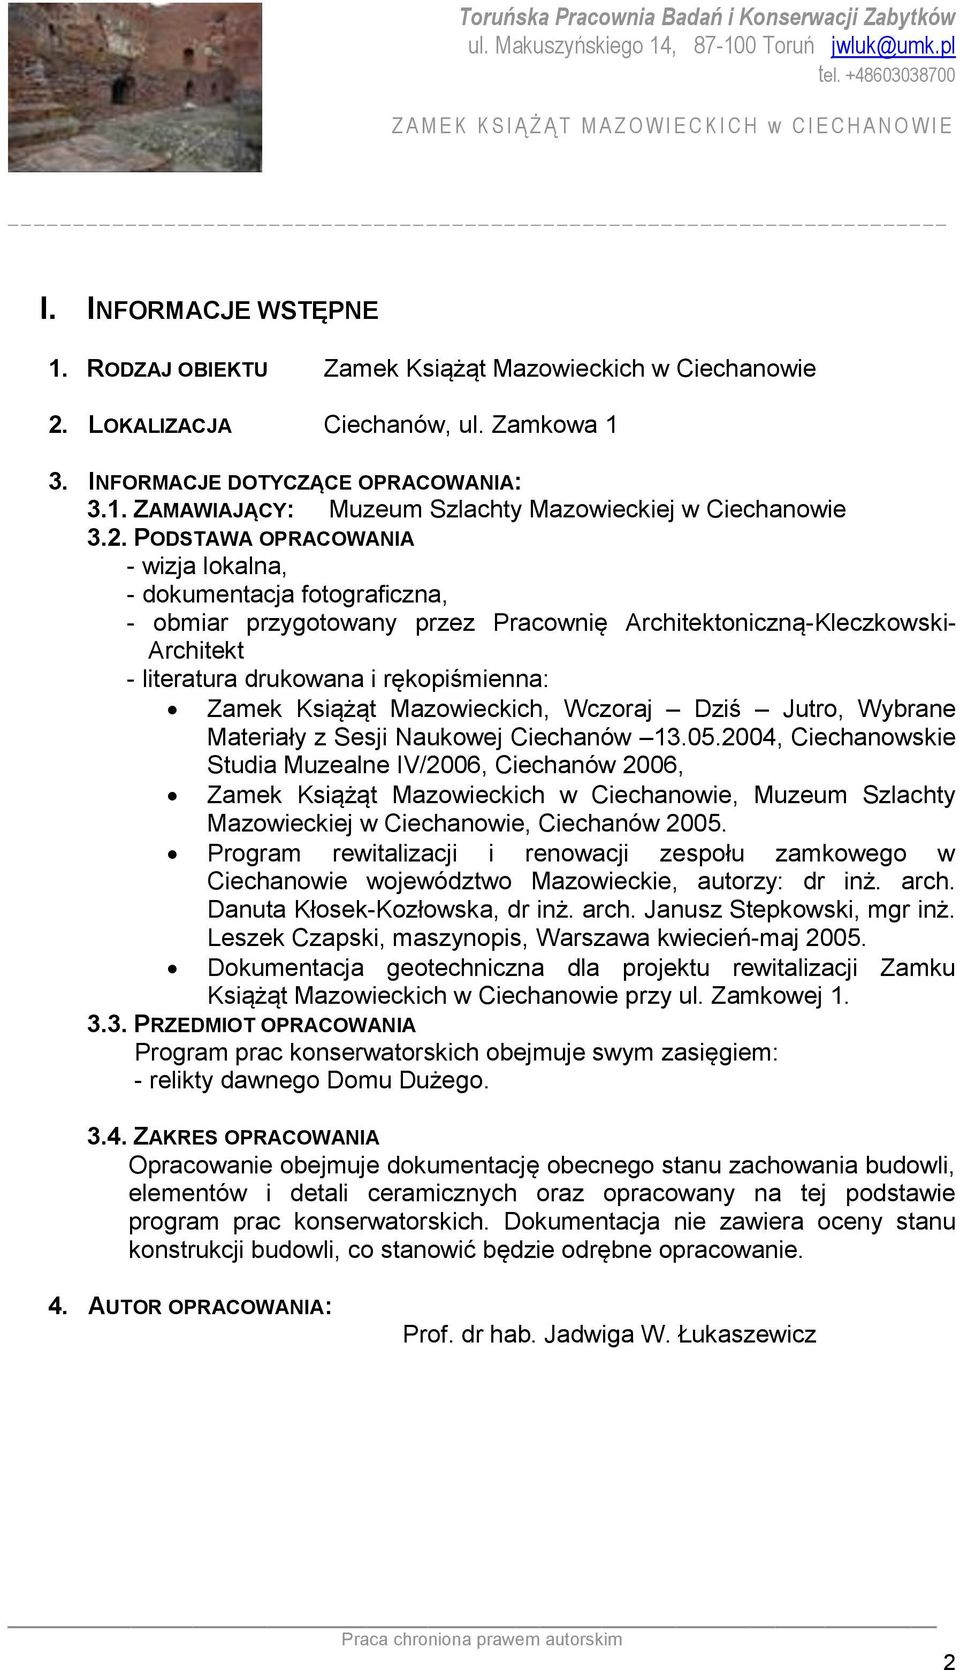 Książąt Mazowieckich, Wczoraj Dziś Jutro, Wybrane Materiały z Sesji Naukowej Ciechanów 13.05.